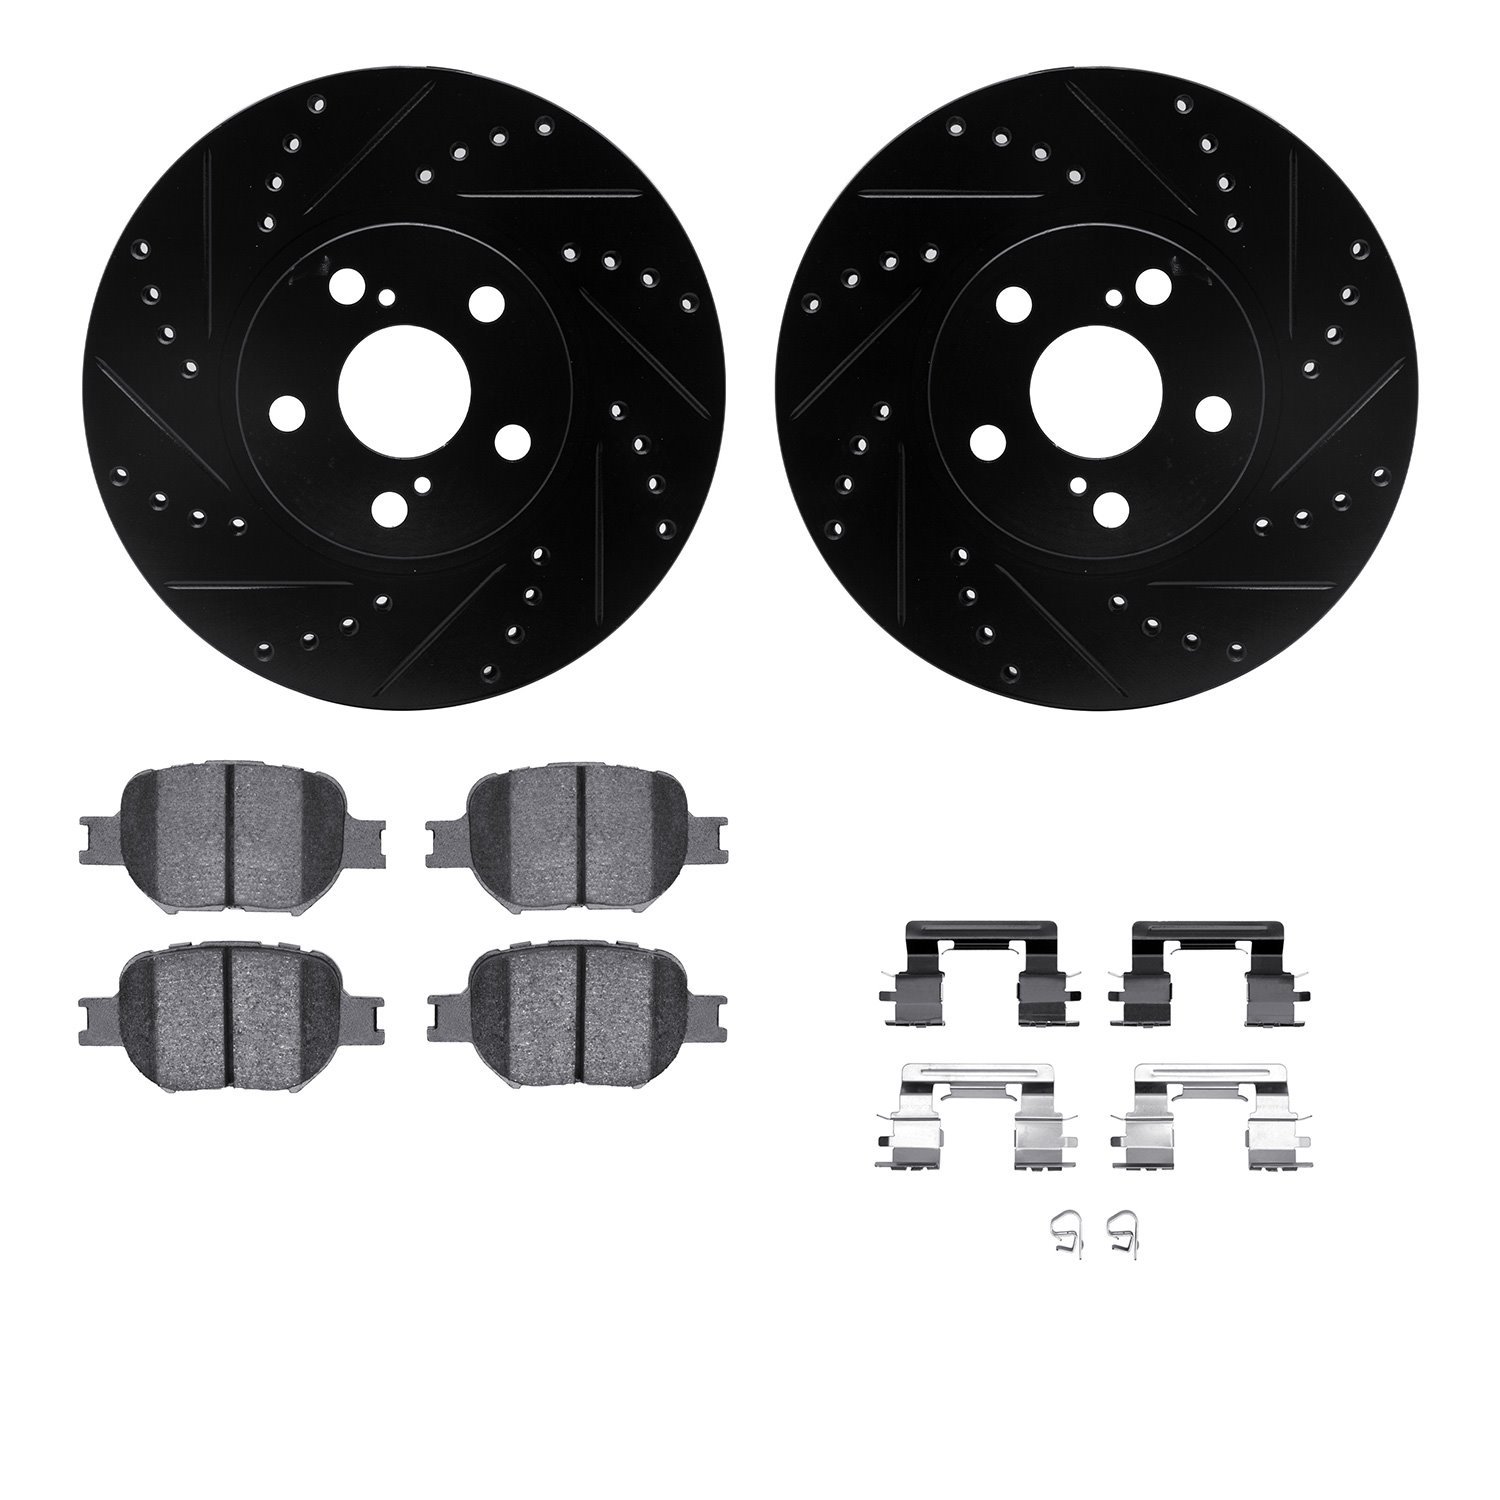 8312-76118 Drilled/Slotted Brake Rotors with 3000-Series Ceramic Brake Pads Kit & Hardware [Black], 2000-2010 Lexus/Toyota/Scion